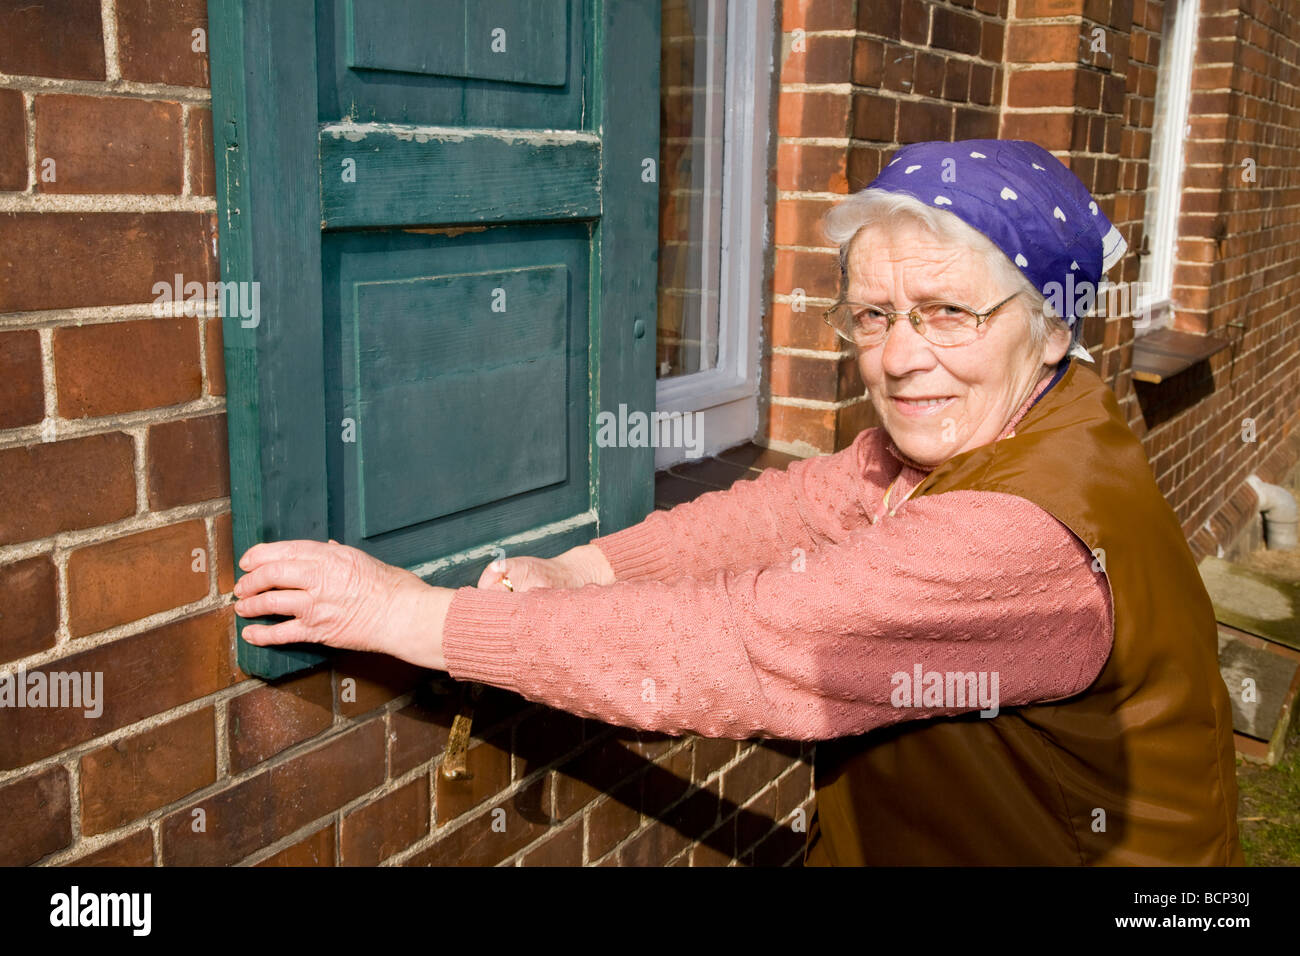 Frau in ihren Siebzigern mit Kopftuch schließt die Fensterläden eines Hauses Stock Photo